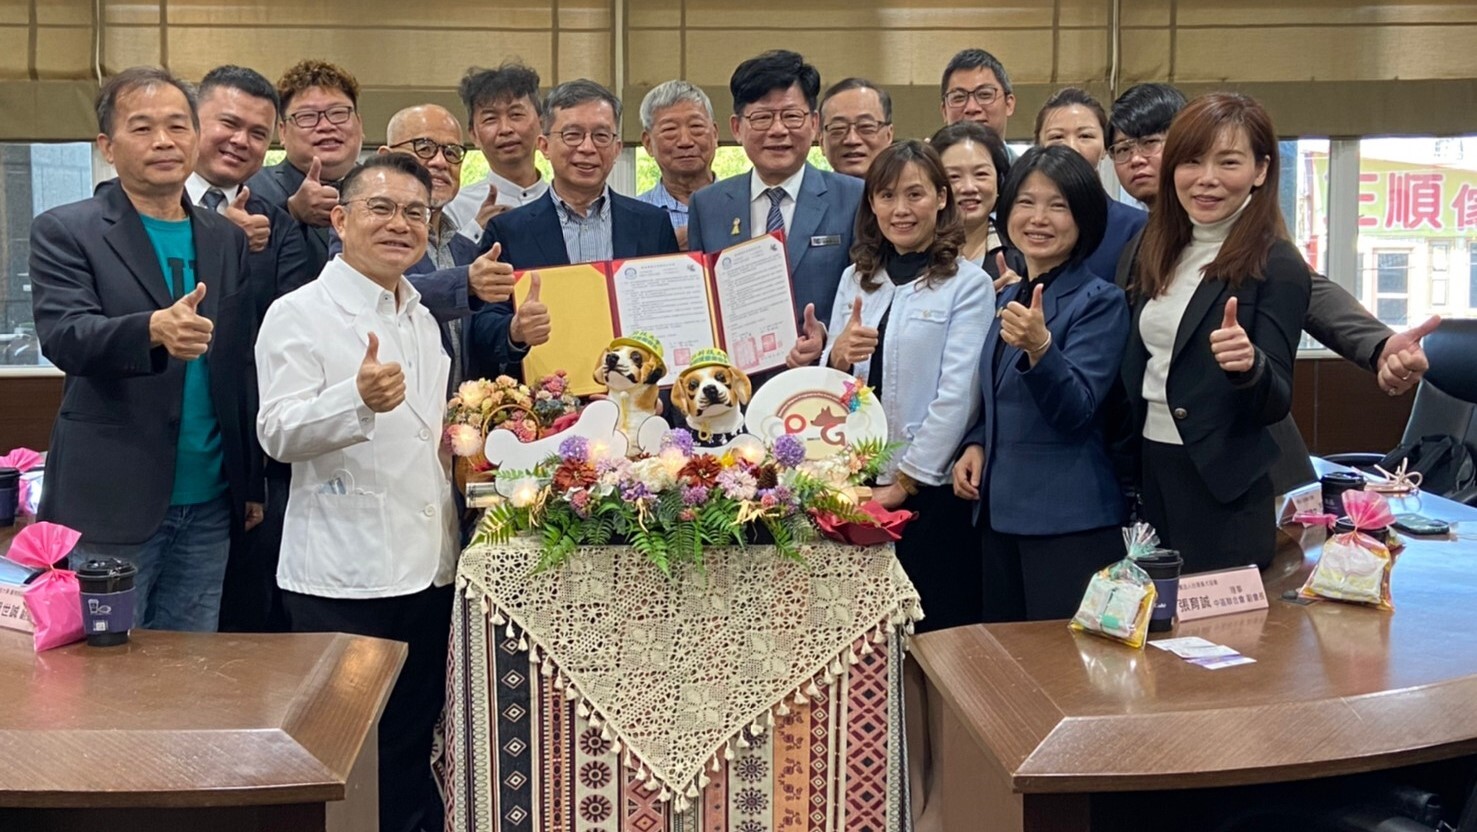 2022-03-10 大仁科大與台灣畜犬協會(KCT)簽訂策略聯盟